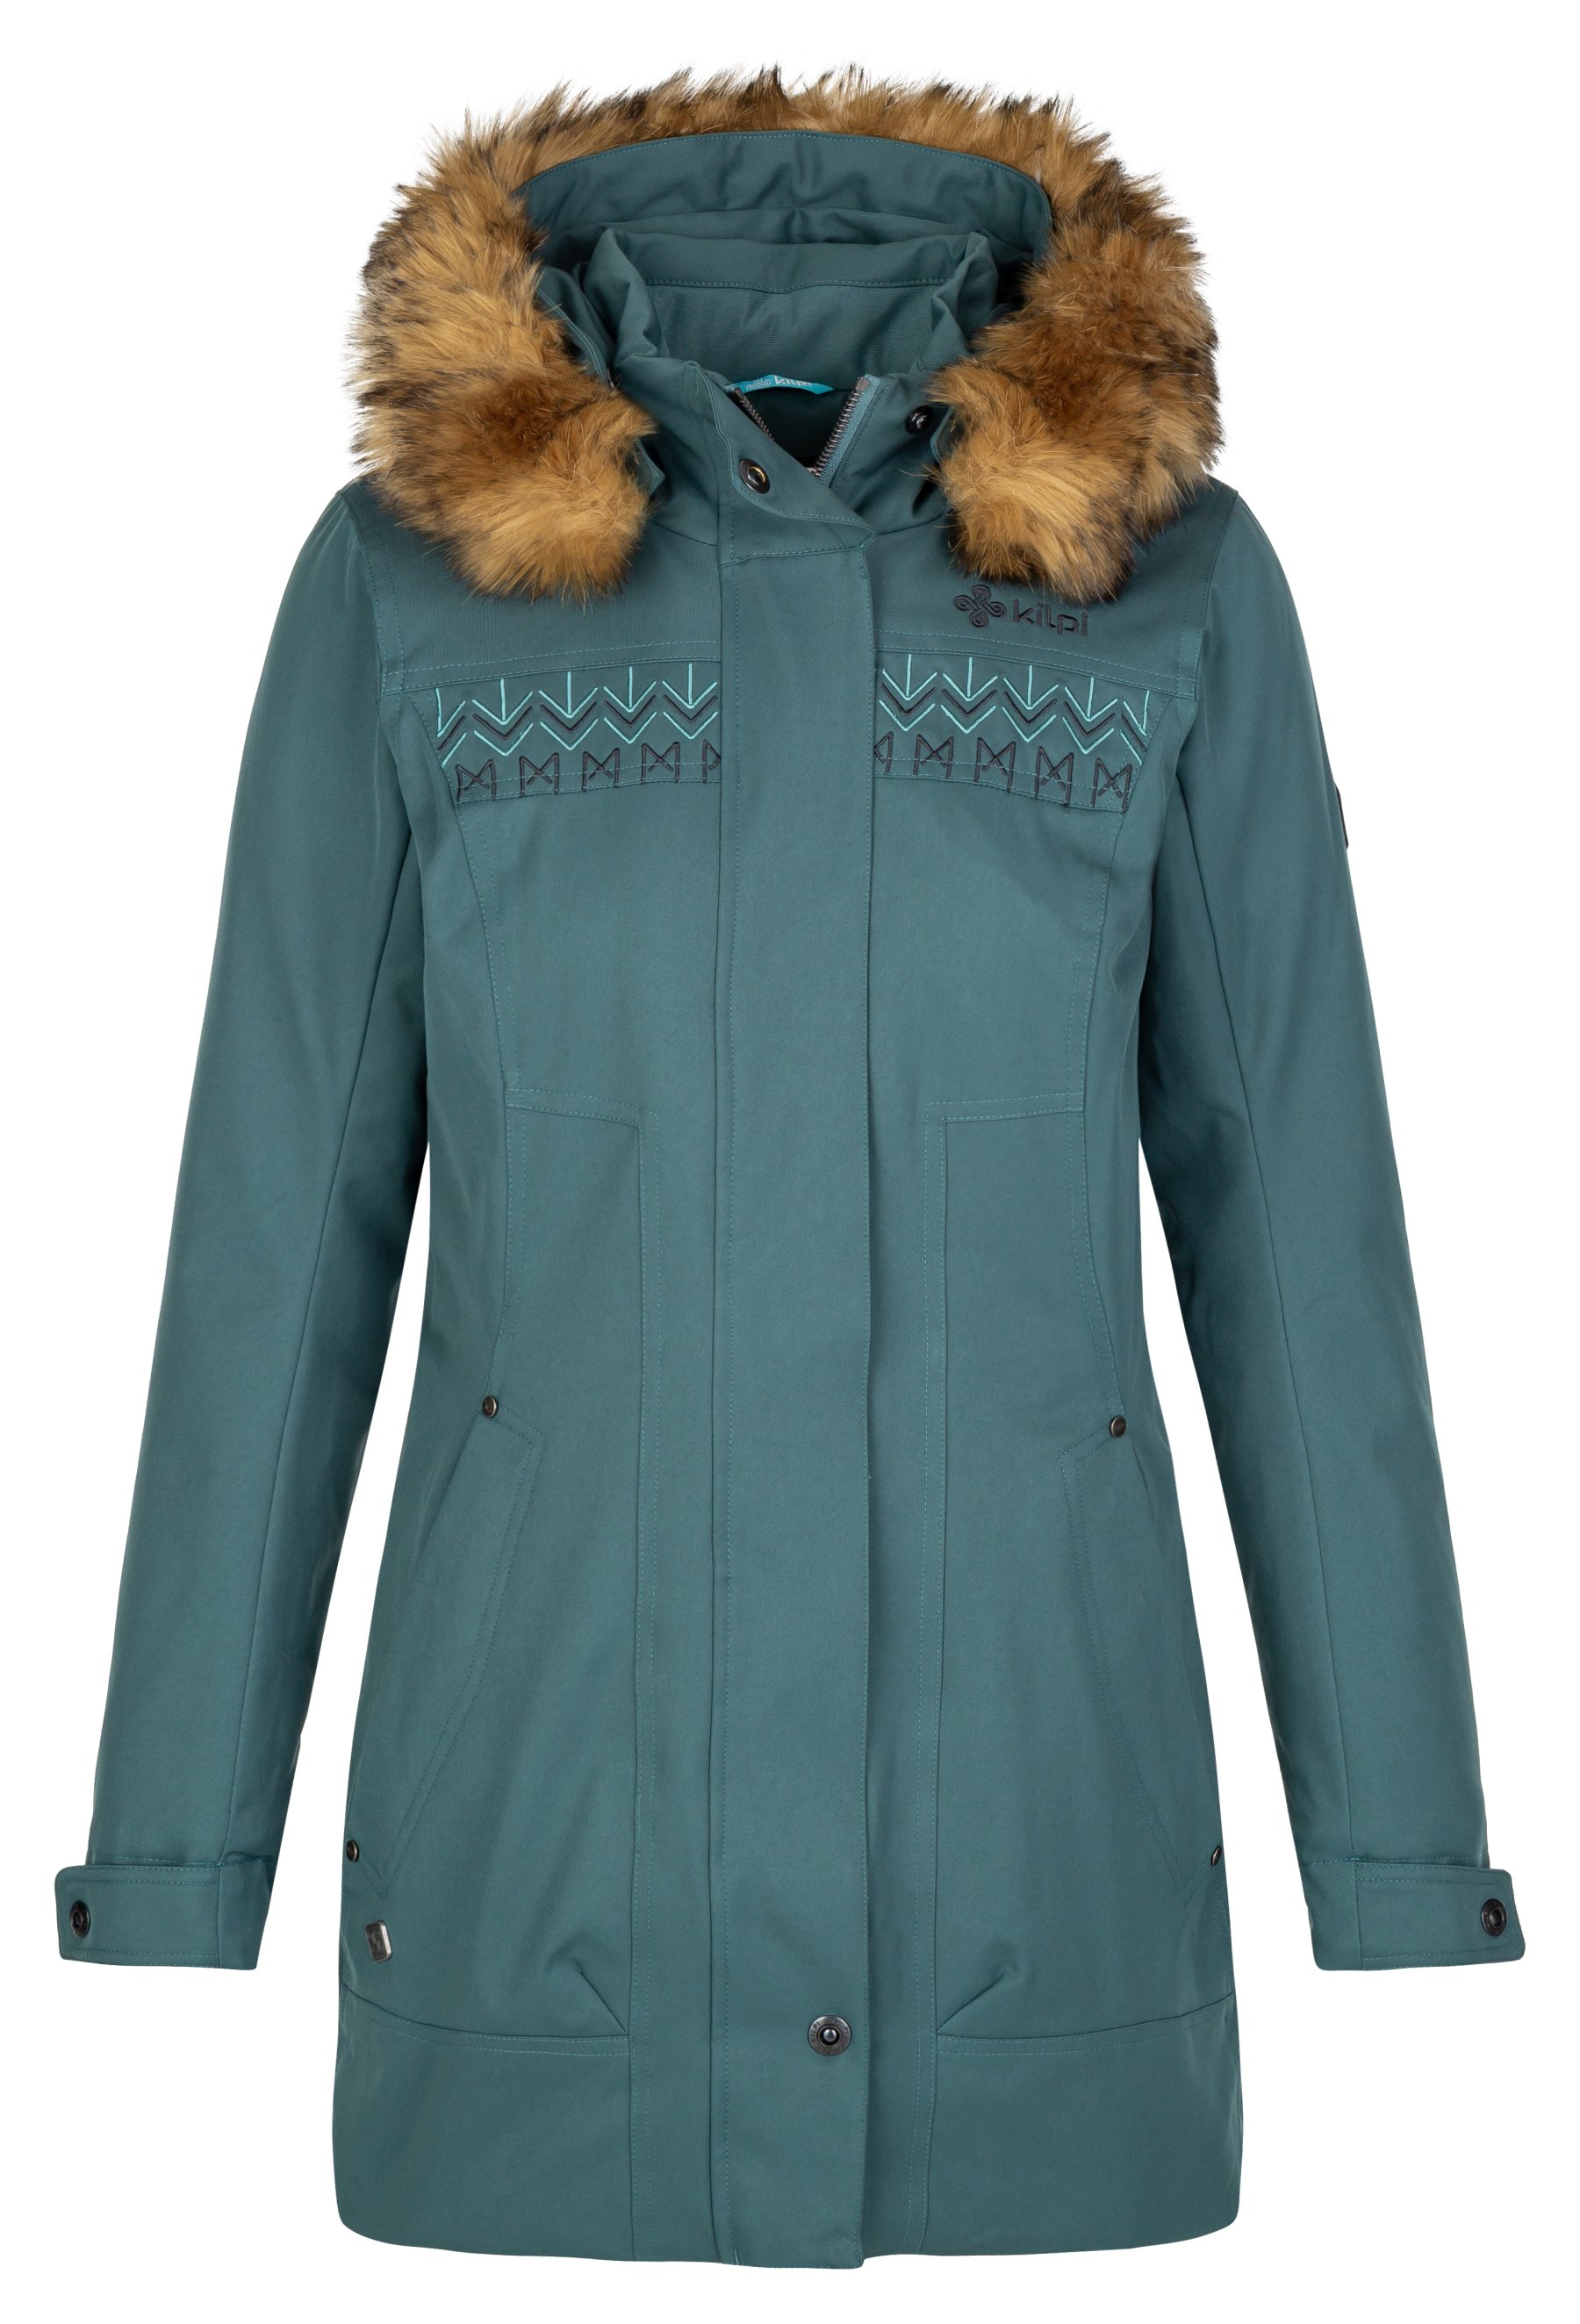 Kilpi dámský zimní kabát Peru-W Barva: tmavě zelená, Velikost: 38